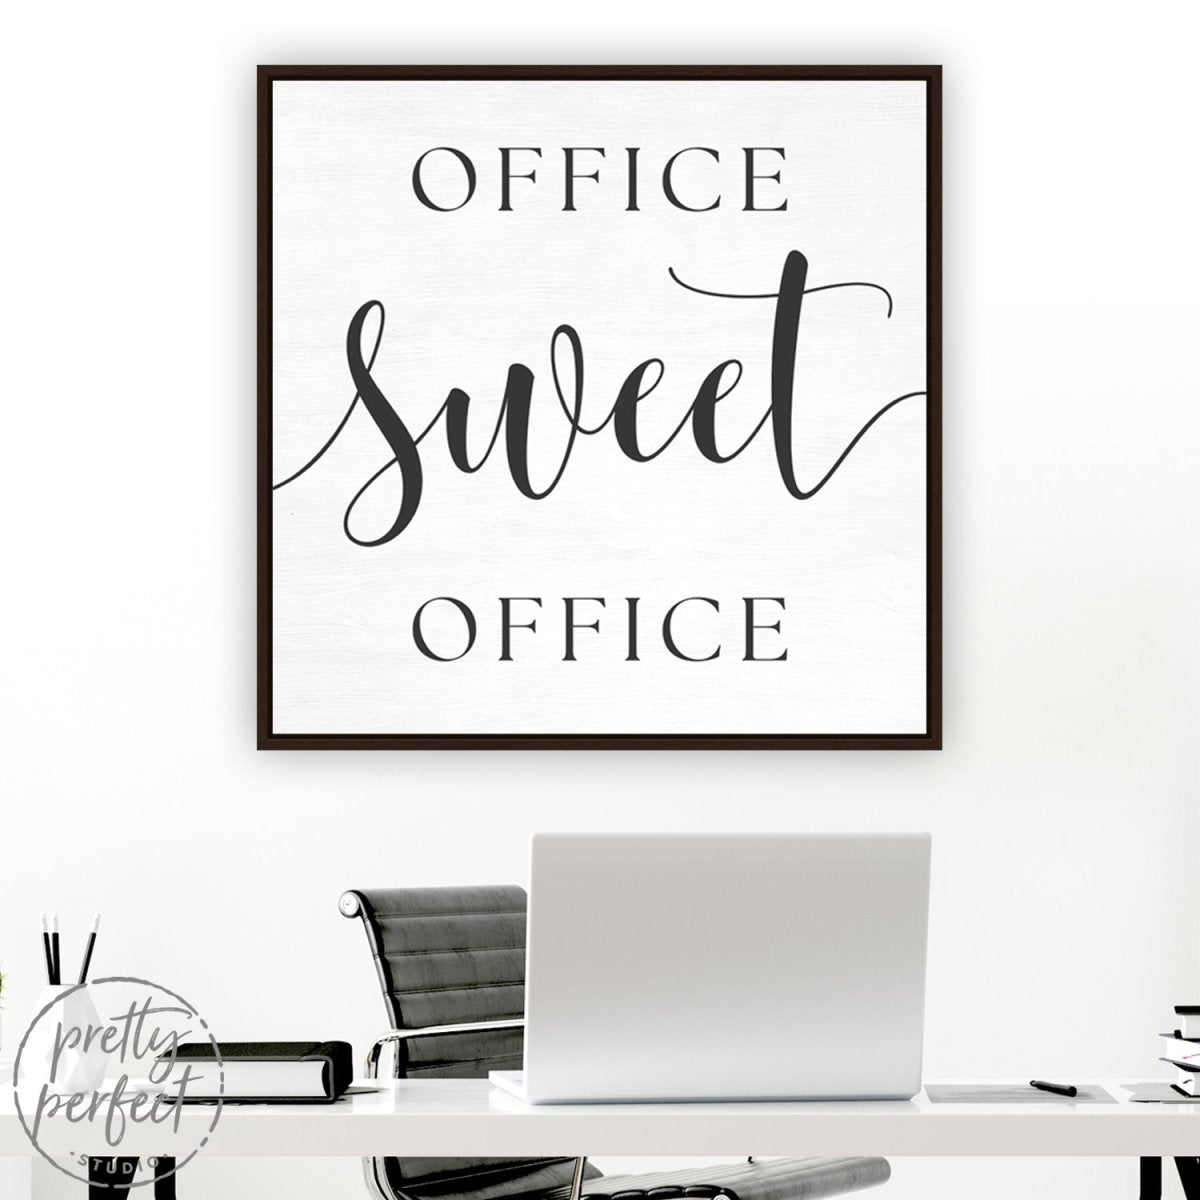 Office Sweet Office Wall Art